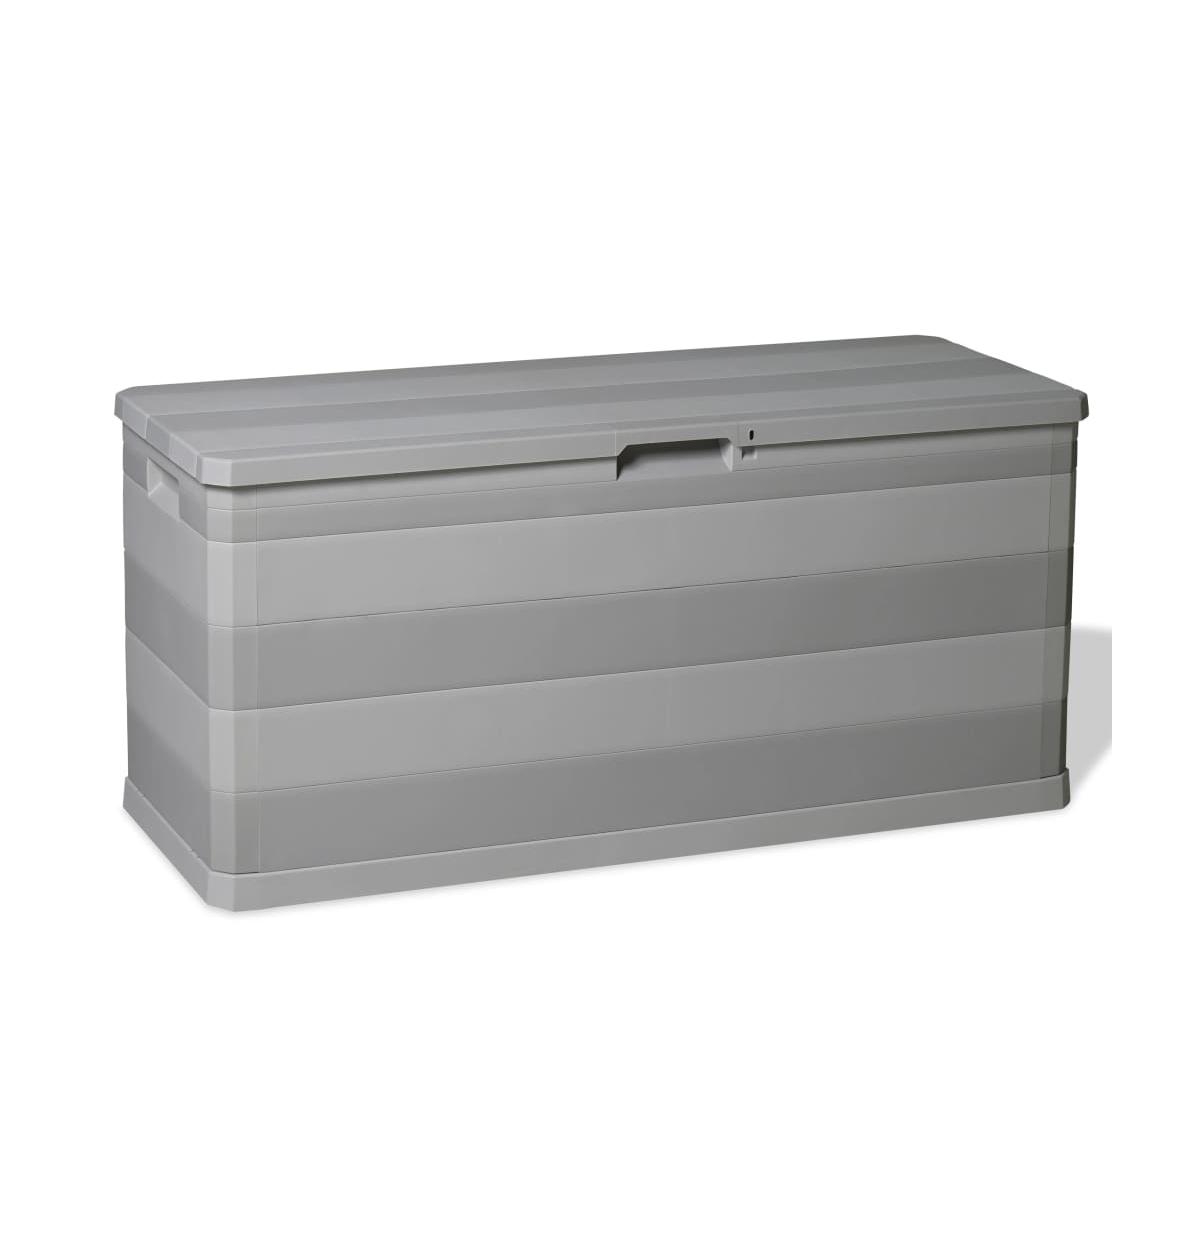 Patio Storage Box Gray 46.1"x17.7"x22" - Grey